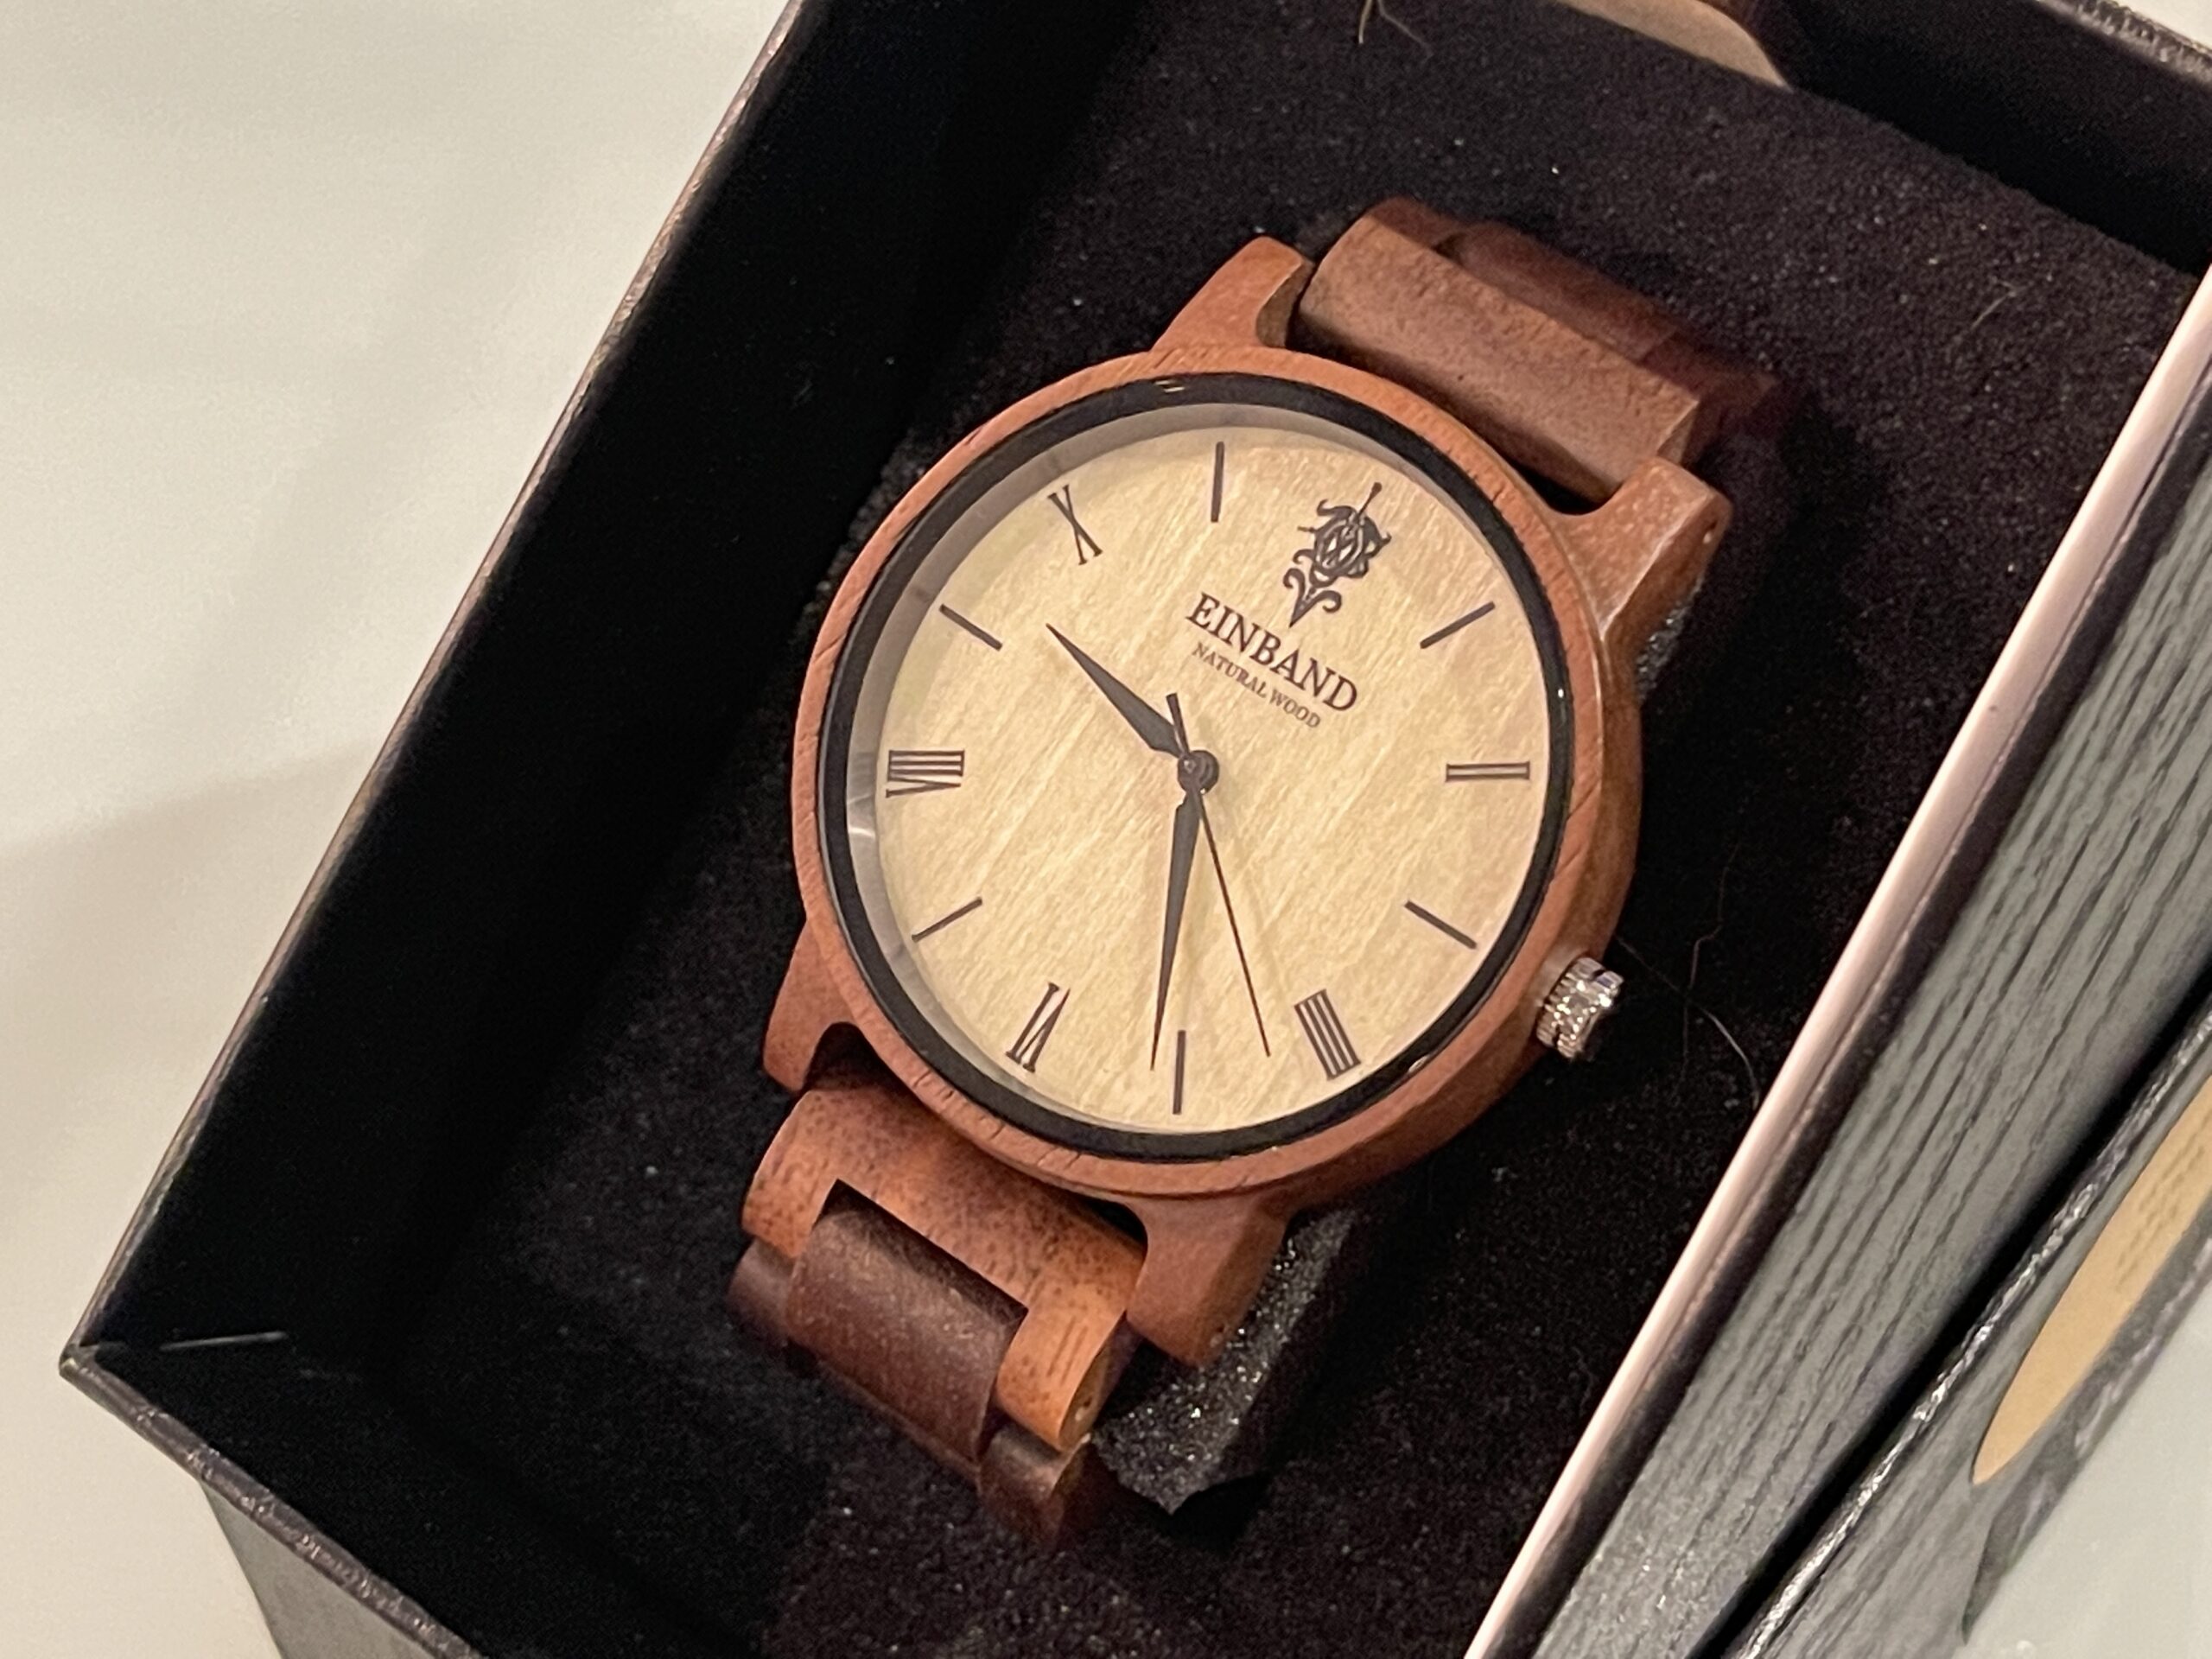 EINBAND Reise Walnut 木製腕時計